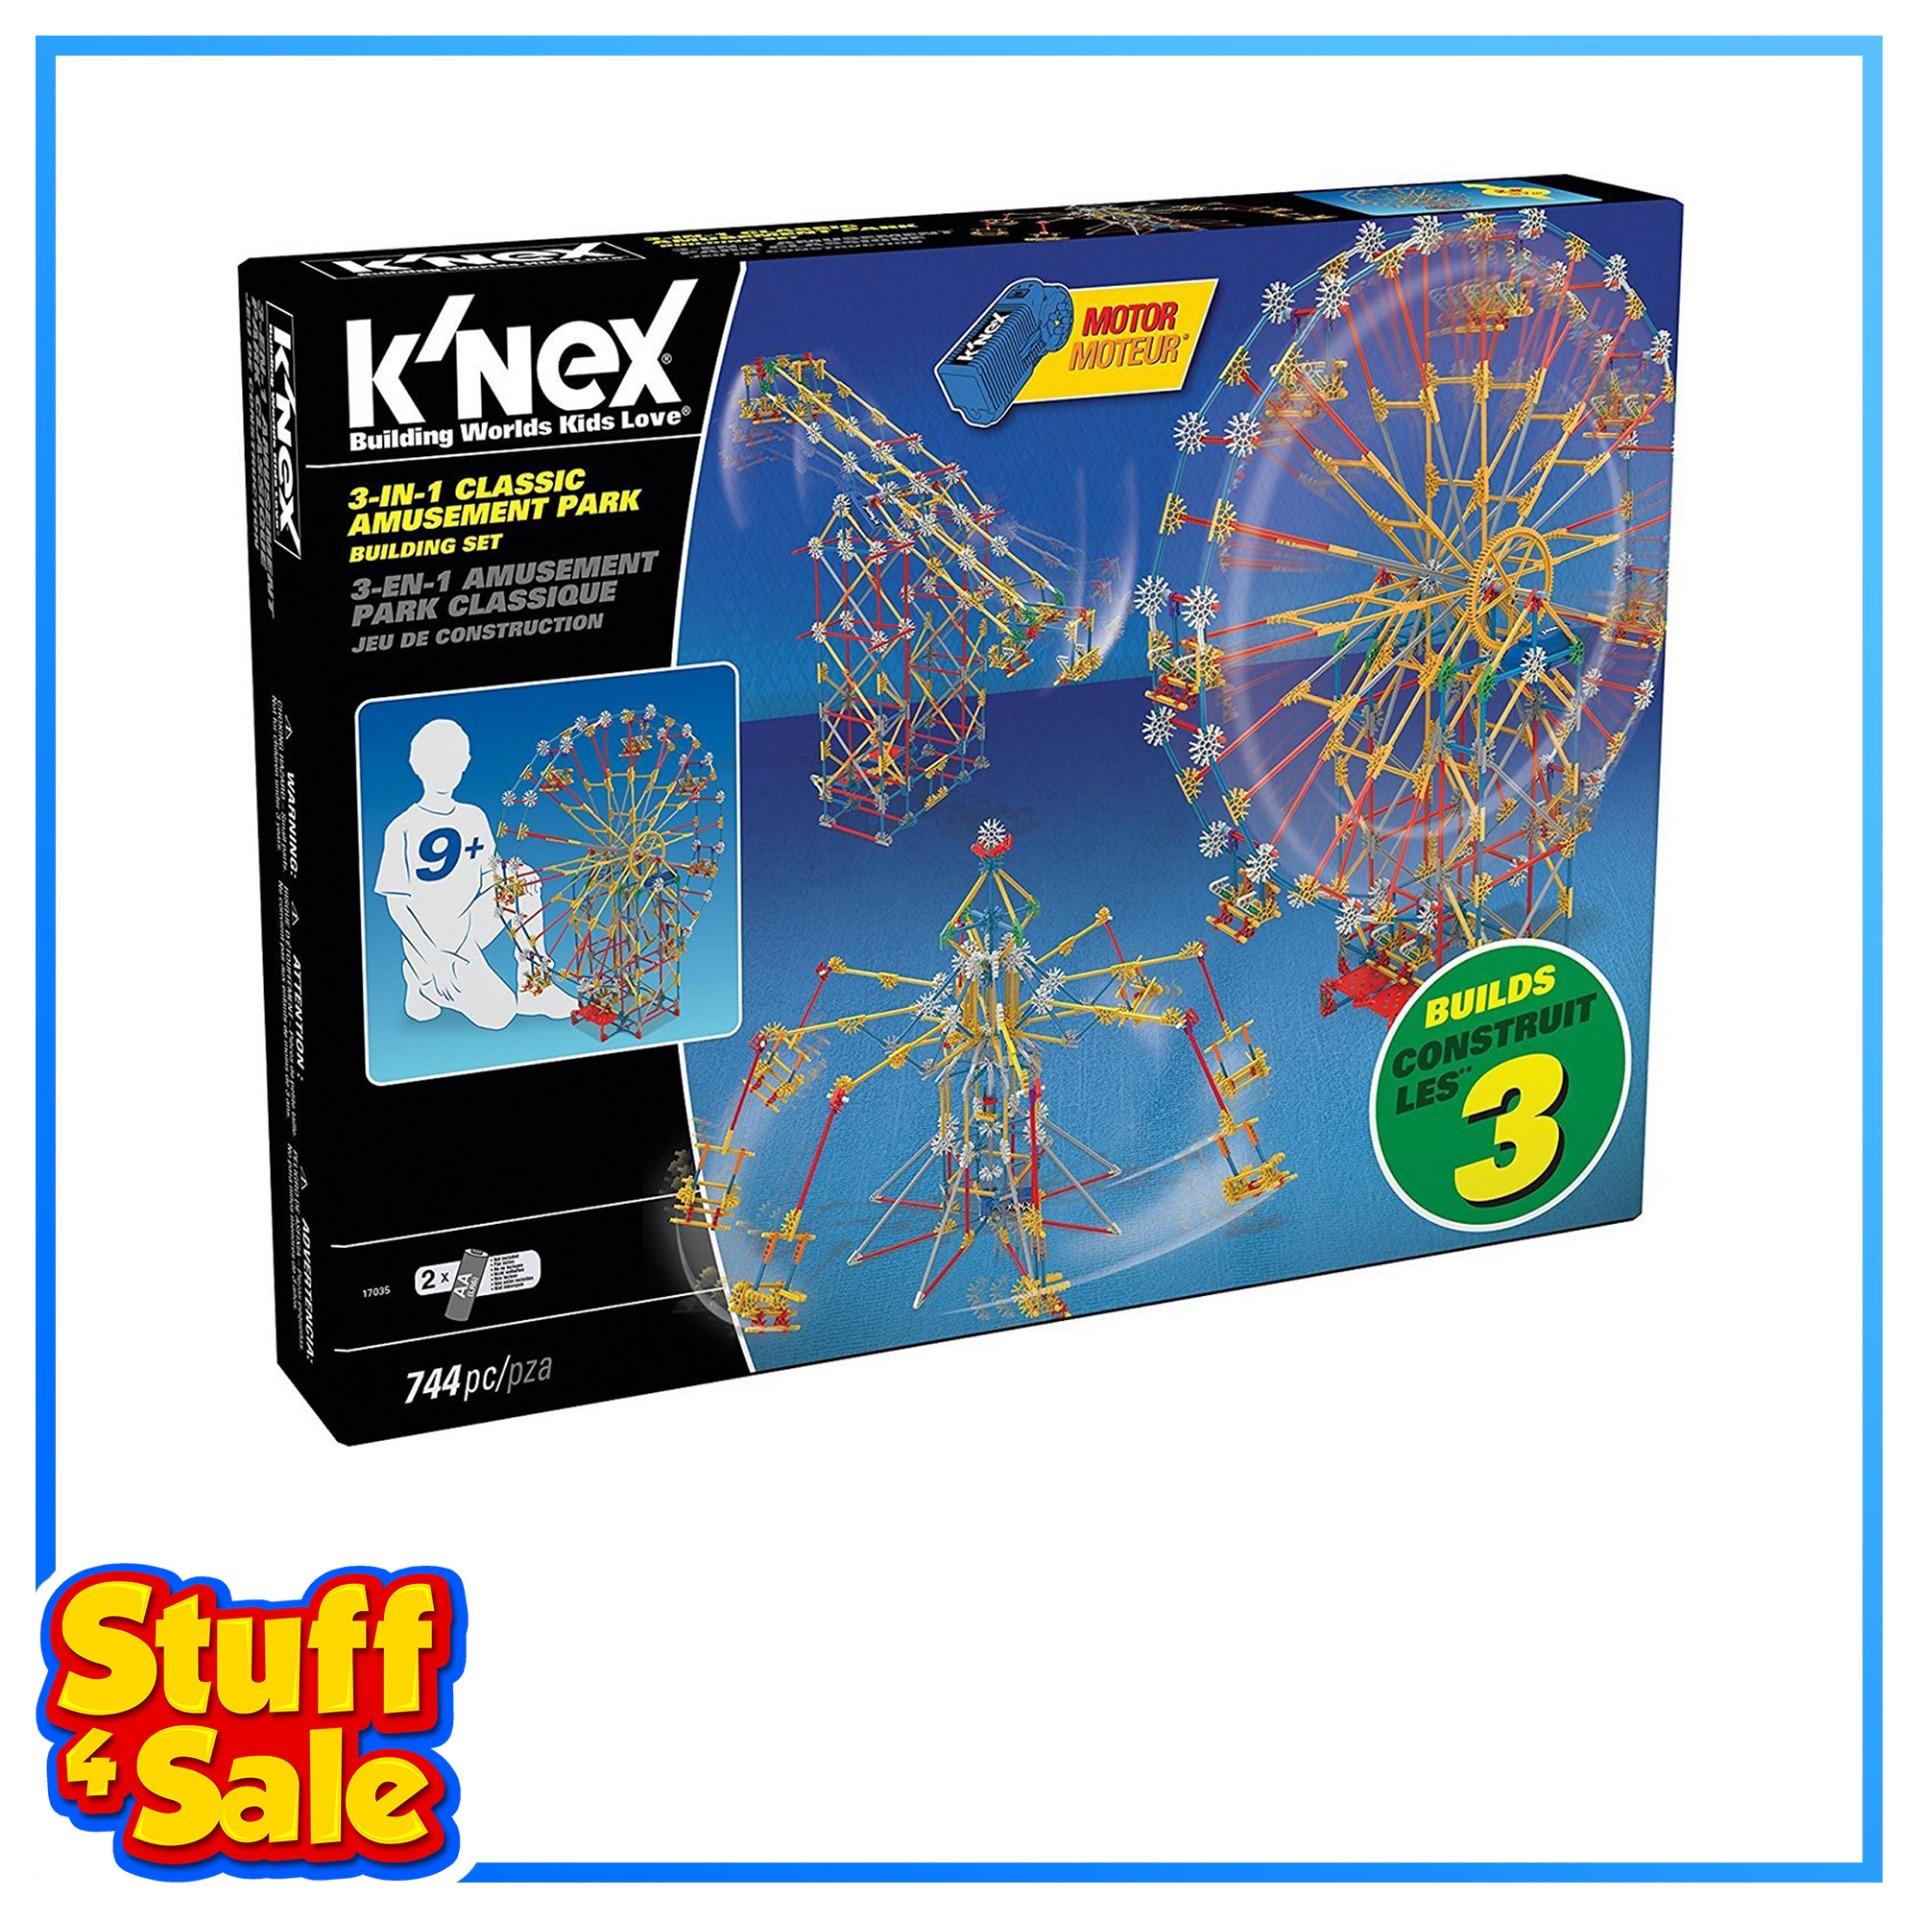 knex sale